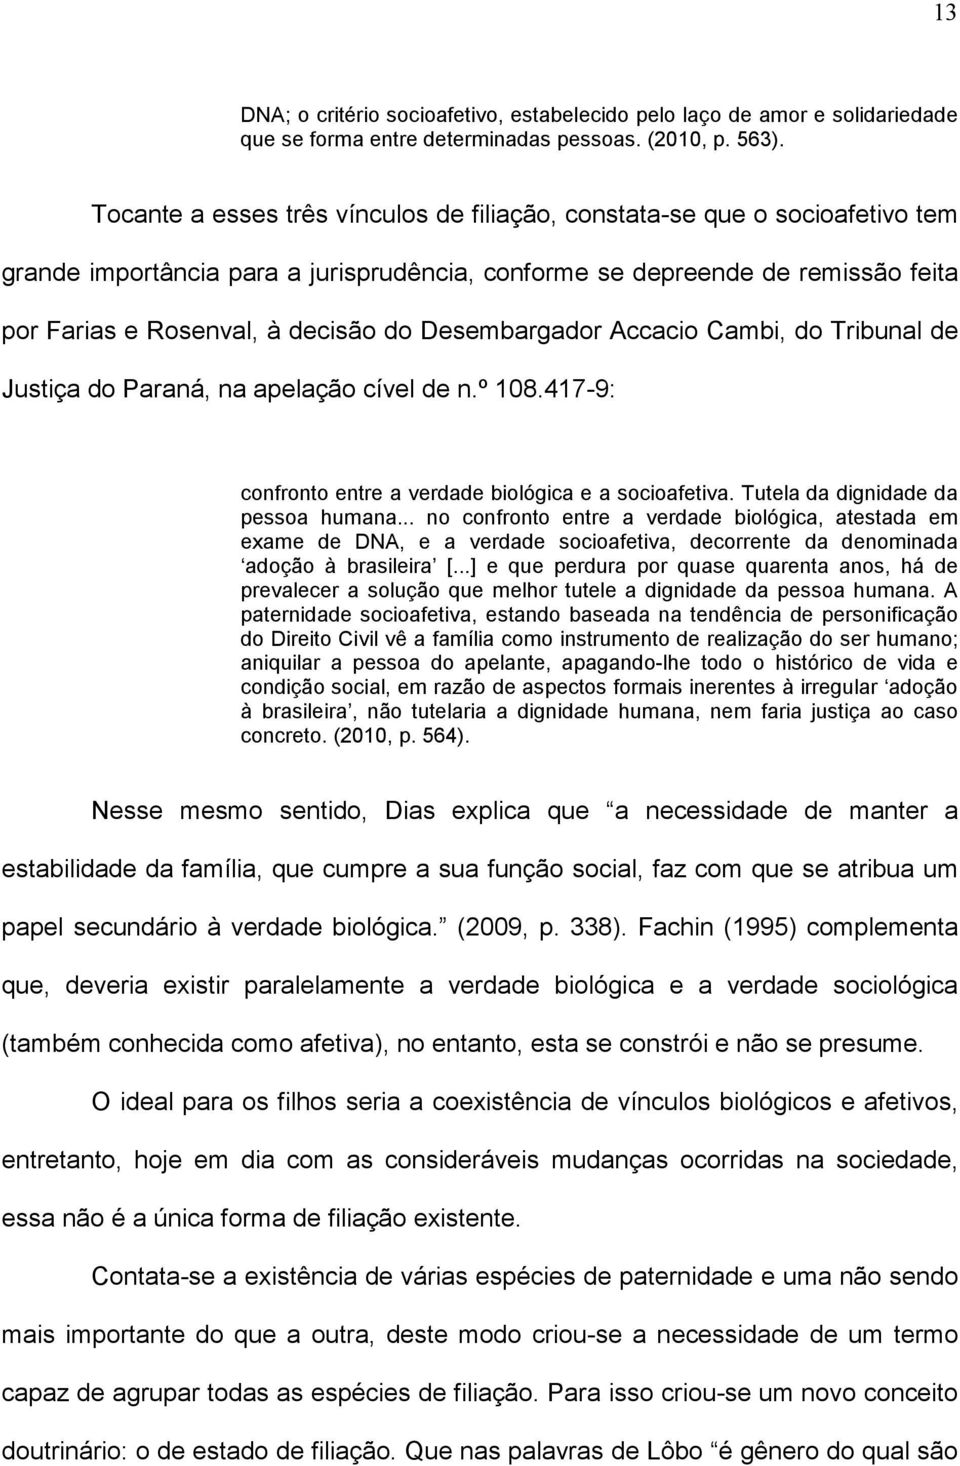 Desembargador Accacio Cambi, do Tribunal de Justiça do Paraná, na apelação cível de n.º 108.417-9: confronto entre a verdade biológica e a socioafetiva. Tutela da dignidade da pessoa humana.